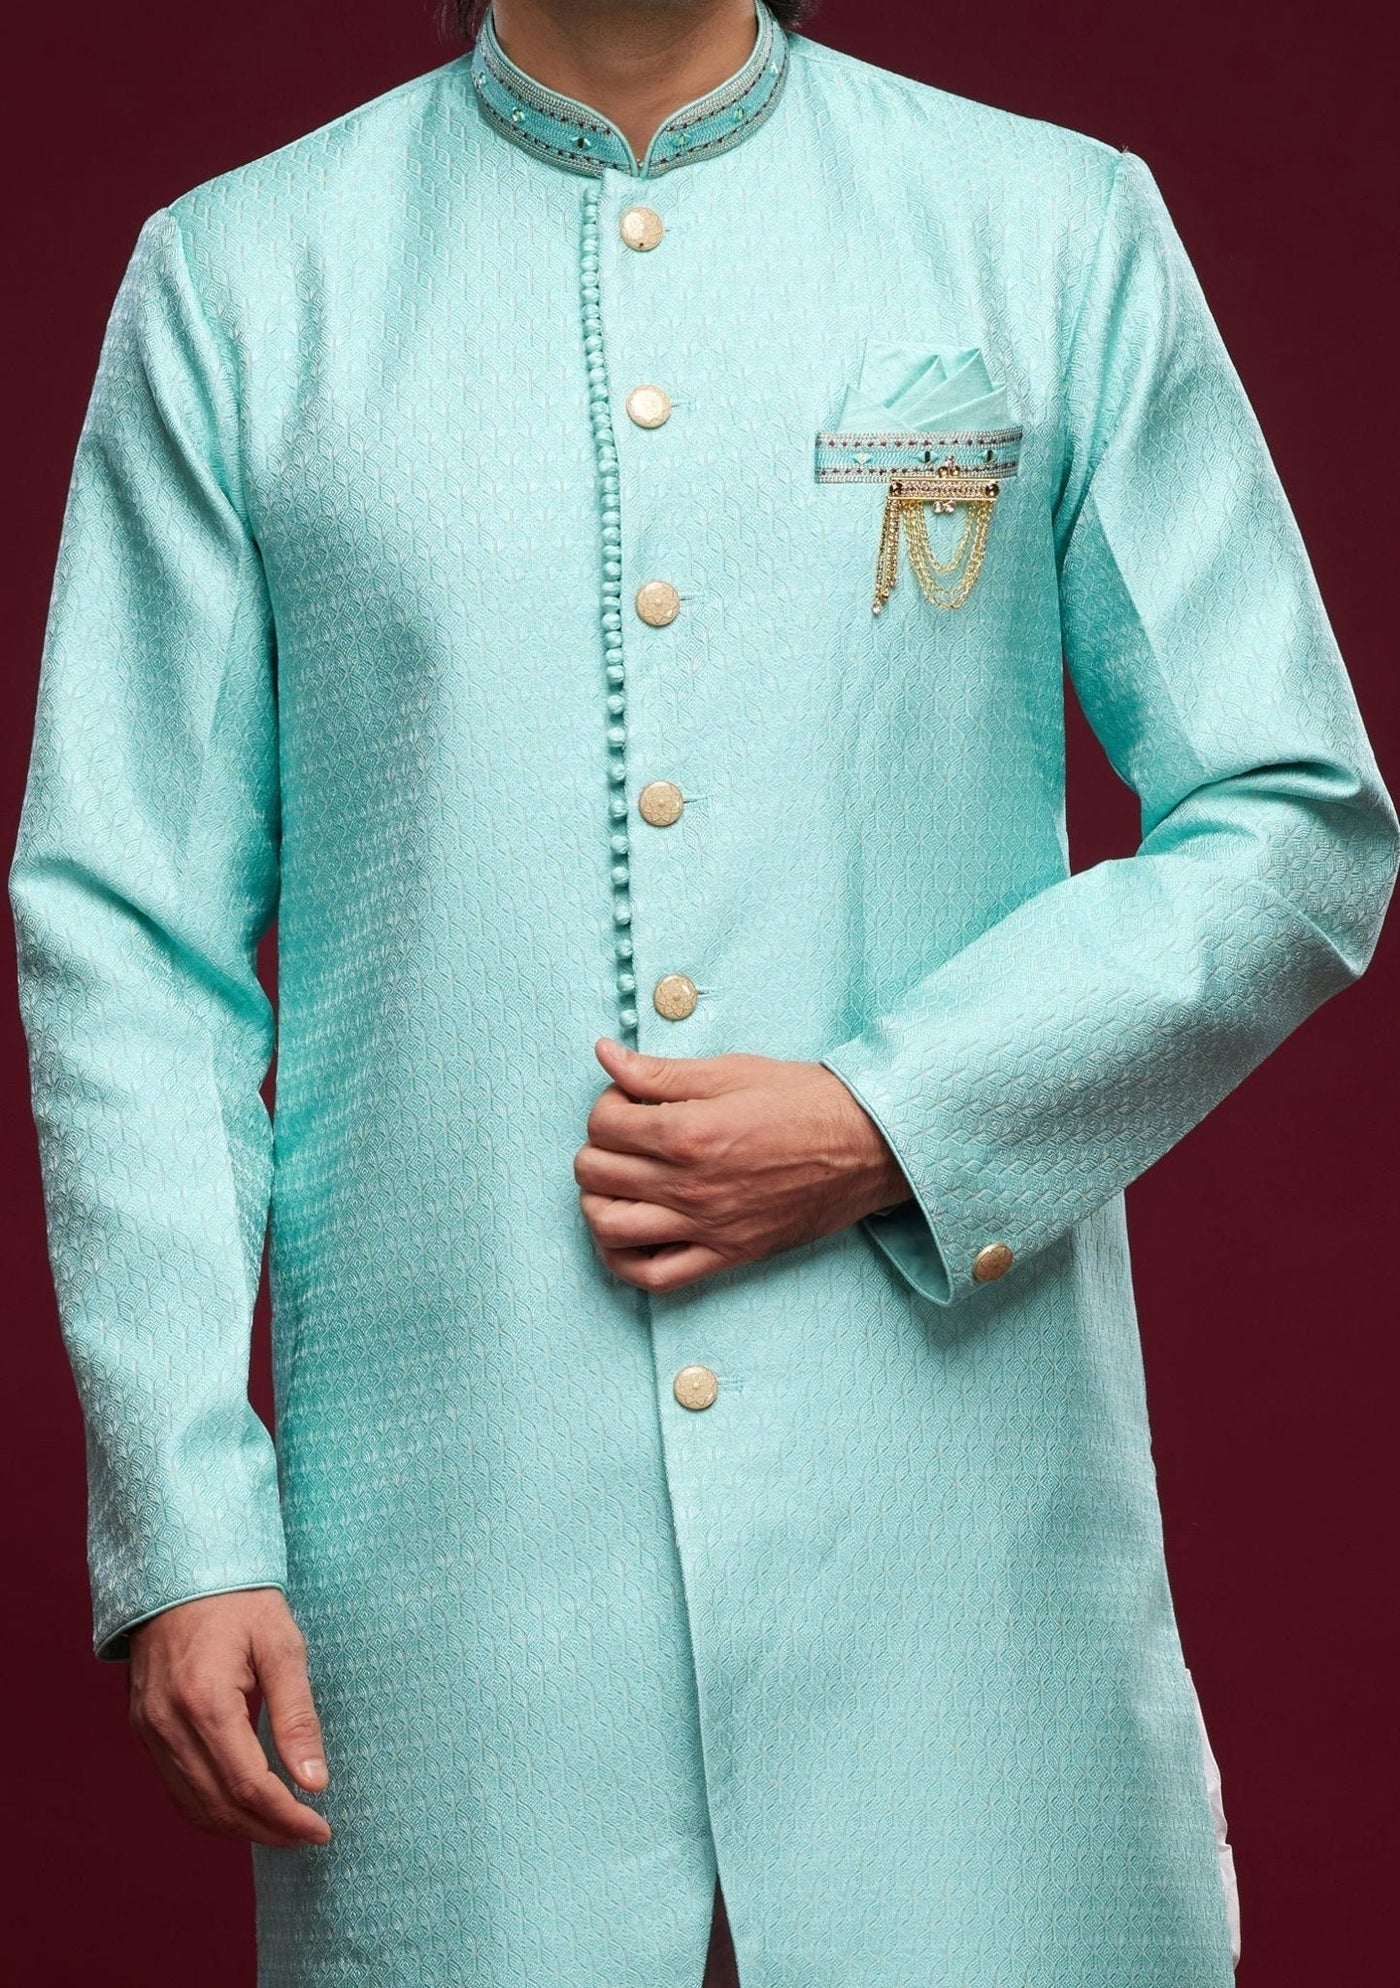 Men's Semi Indo Western Party Wear Sherwani Suit - db25767